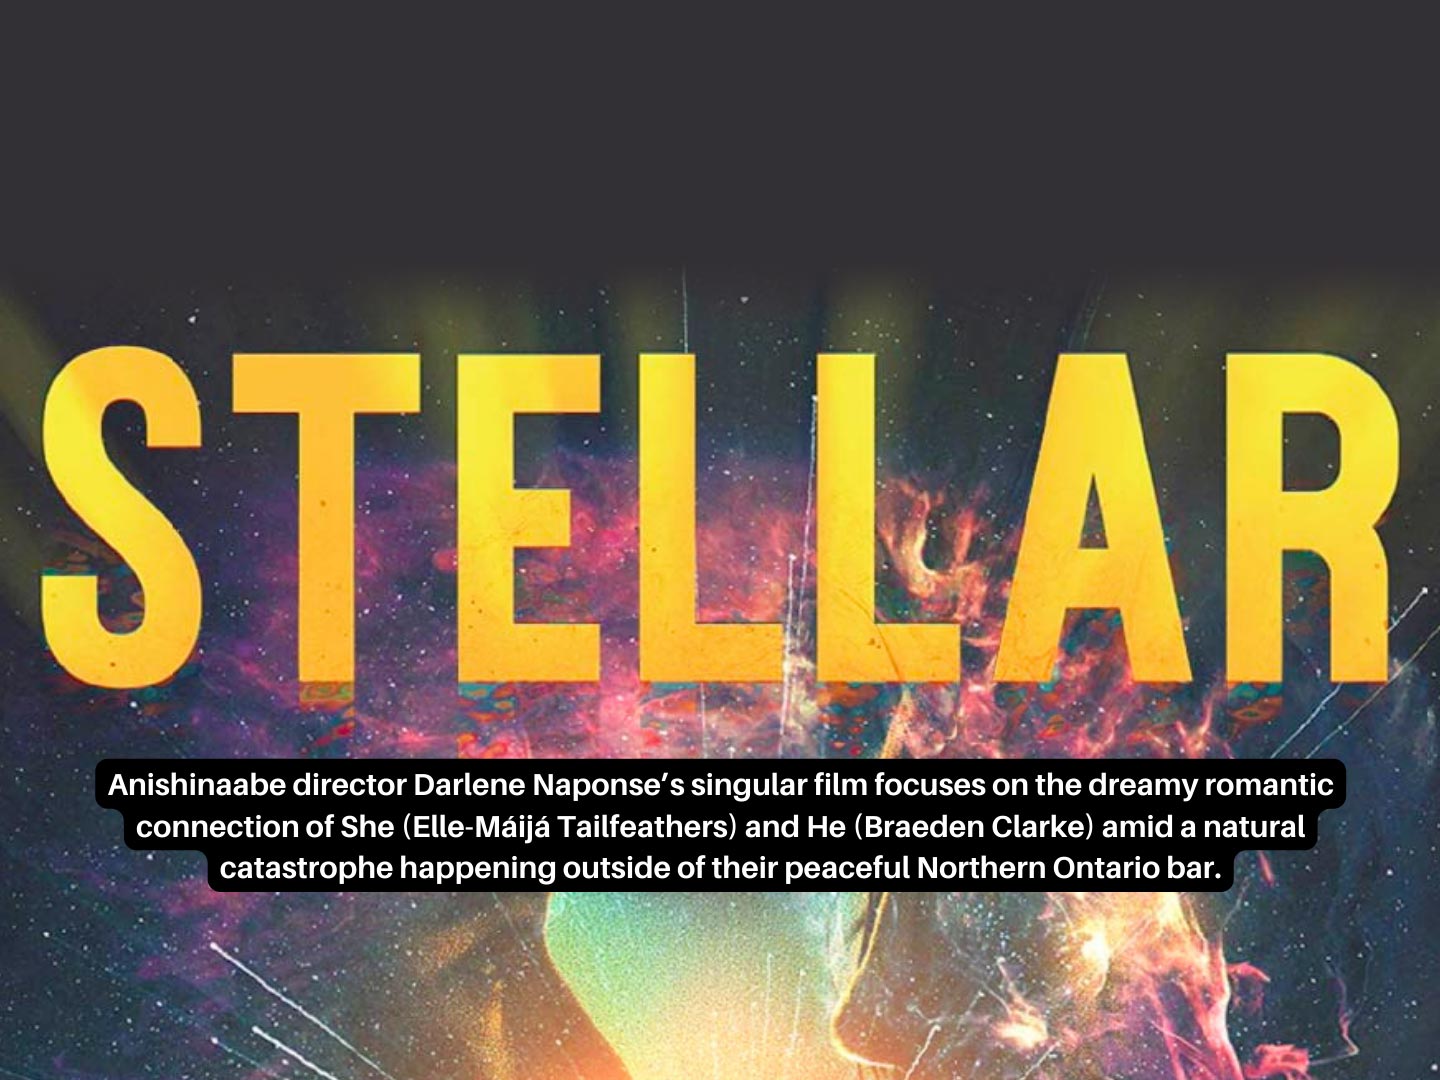 North Bay Film presents: STELLAR